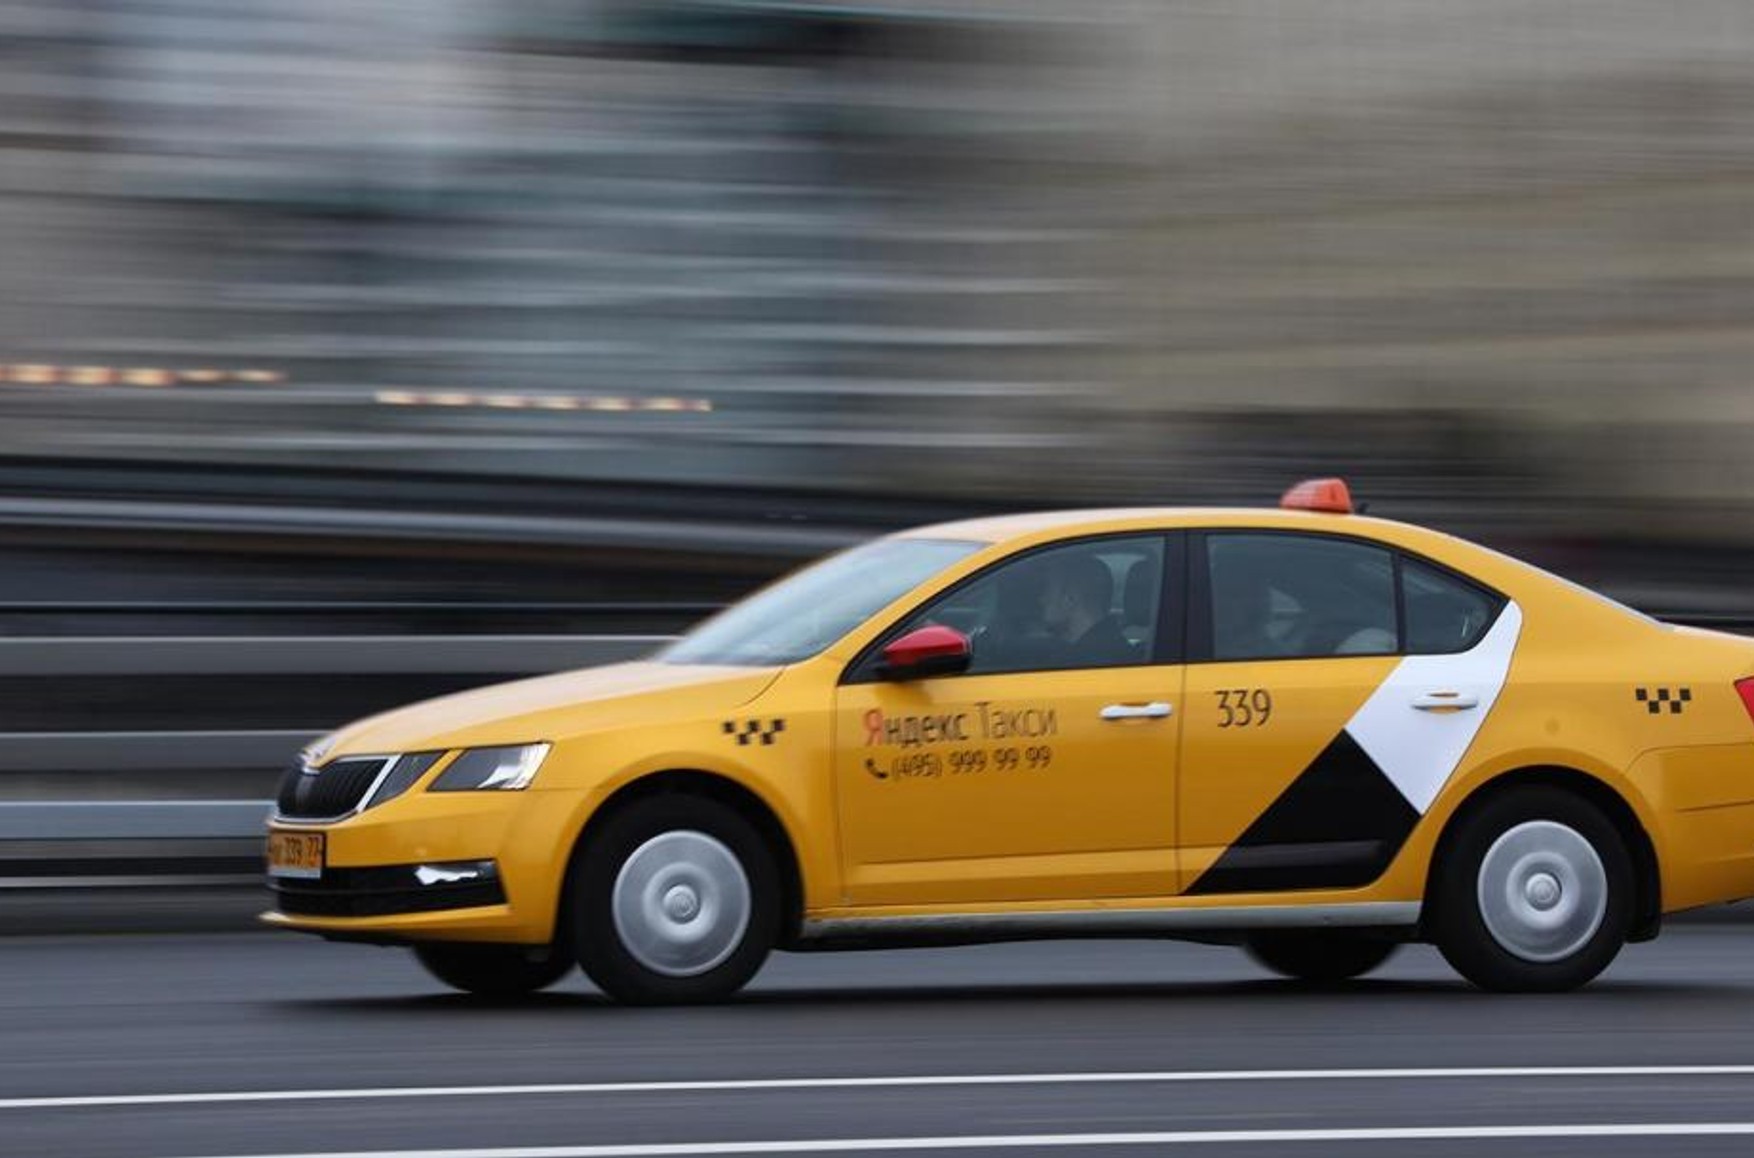 В работе «Яндекс Go» и Uber произошел сбой. Пользователи не могут заказать такси в Москве и других регионах